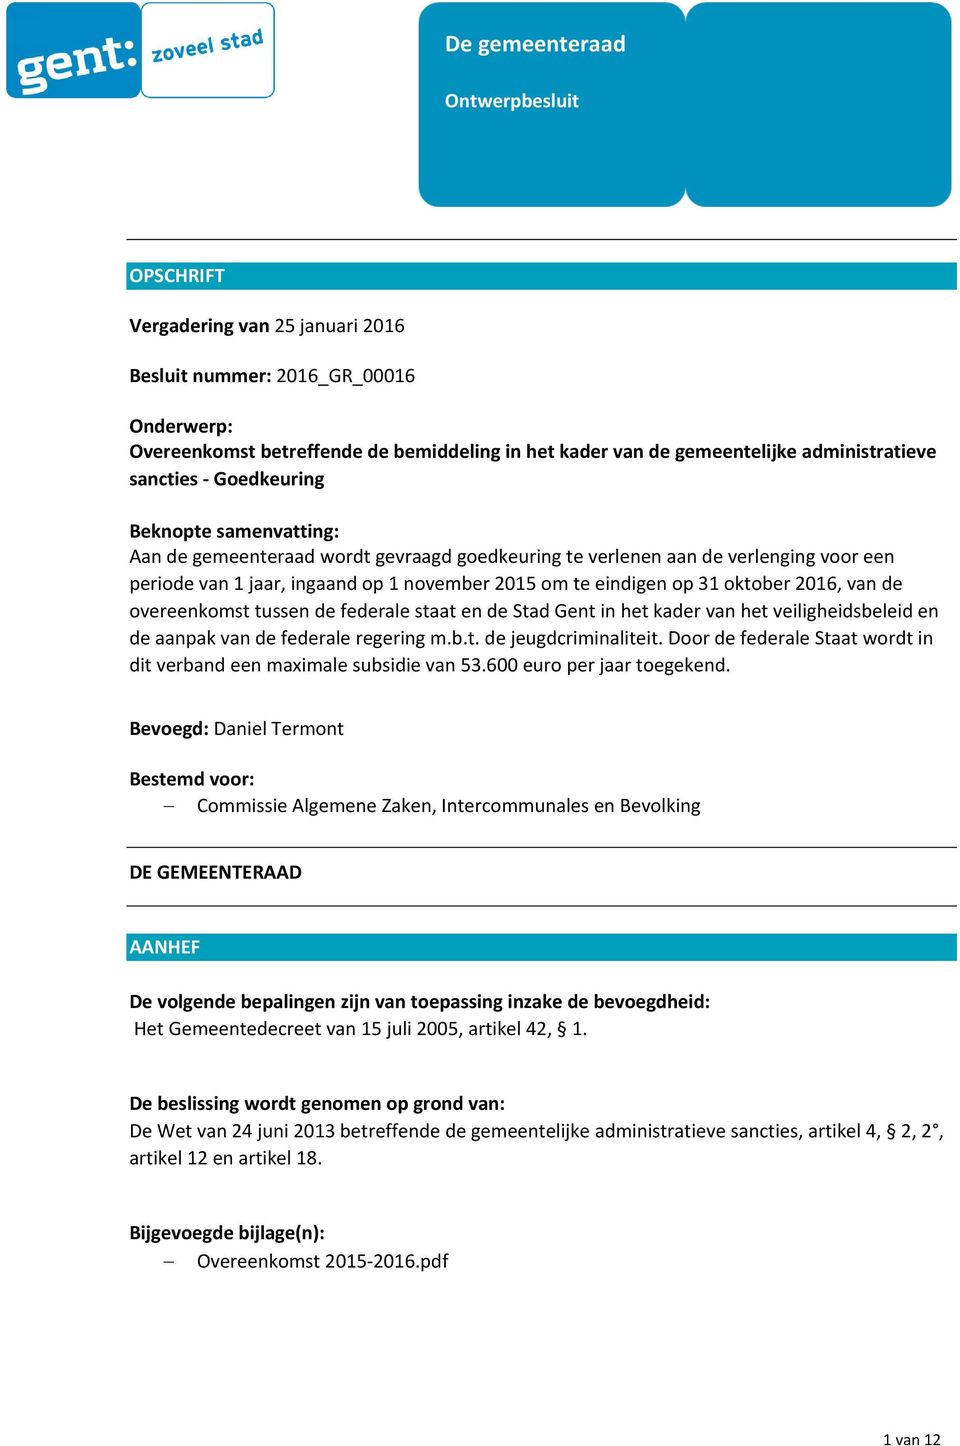 te eindigen op 31 oktober 2016, van de overeenkomst tussen de federale staat en de Stad Gent in het kader van het veiligheidsbeleid en de aanpak van de federale regering m.b.t. de jeugdcriminaliteit.